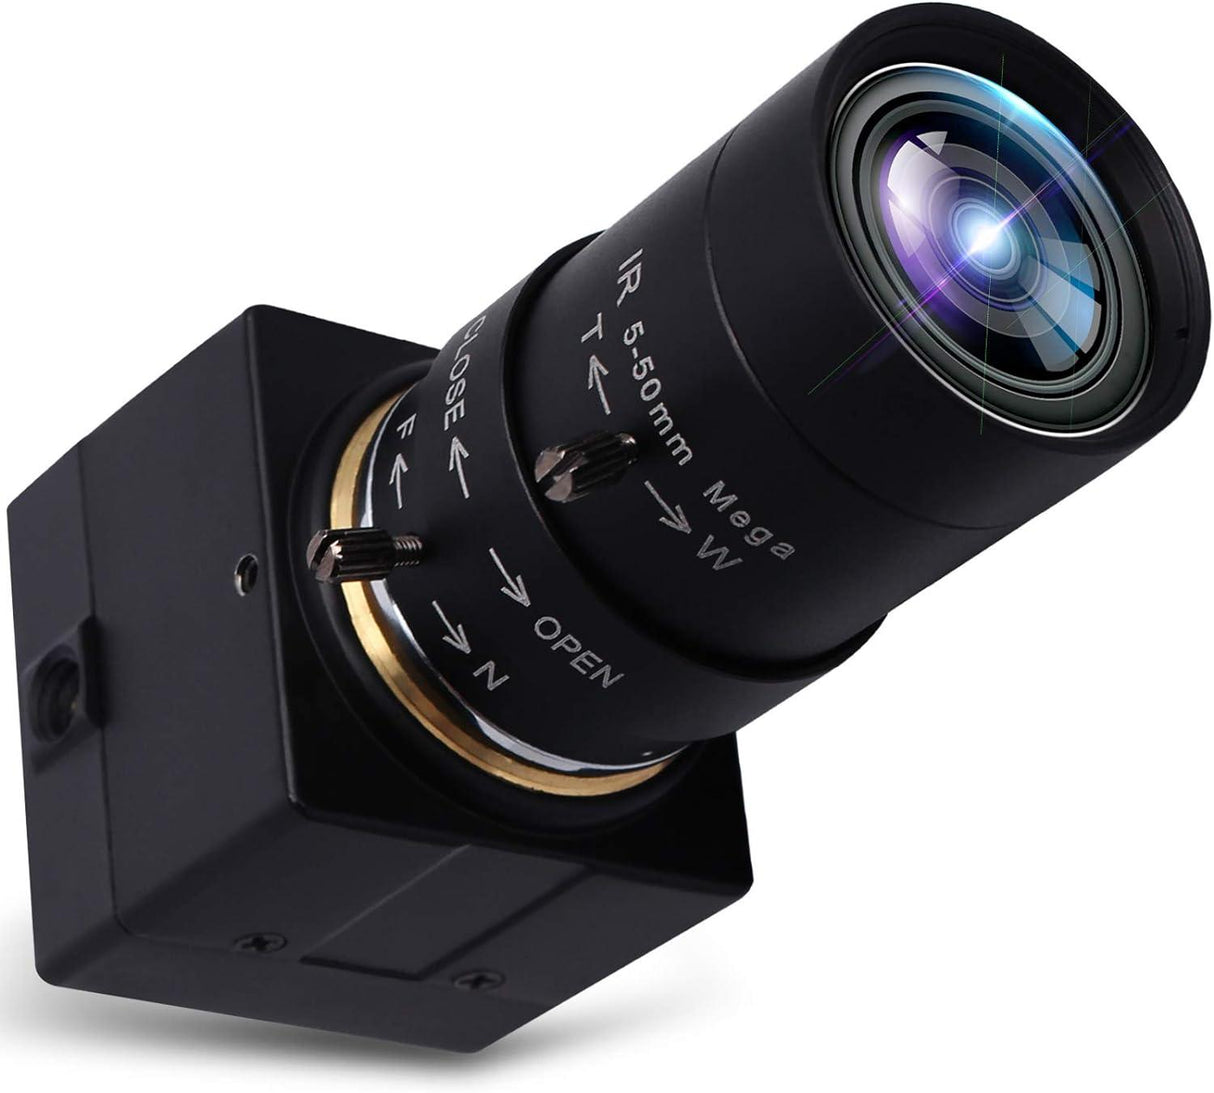 SVPRO USB Biztonsági Rendszer CCTV Felügyeleti Kamera, 5-50mm Varifocal Zoom Lencse, 720P Megapixel, USB2.0